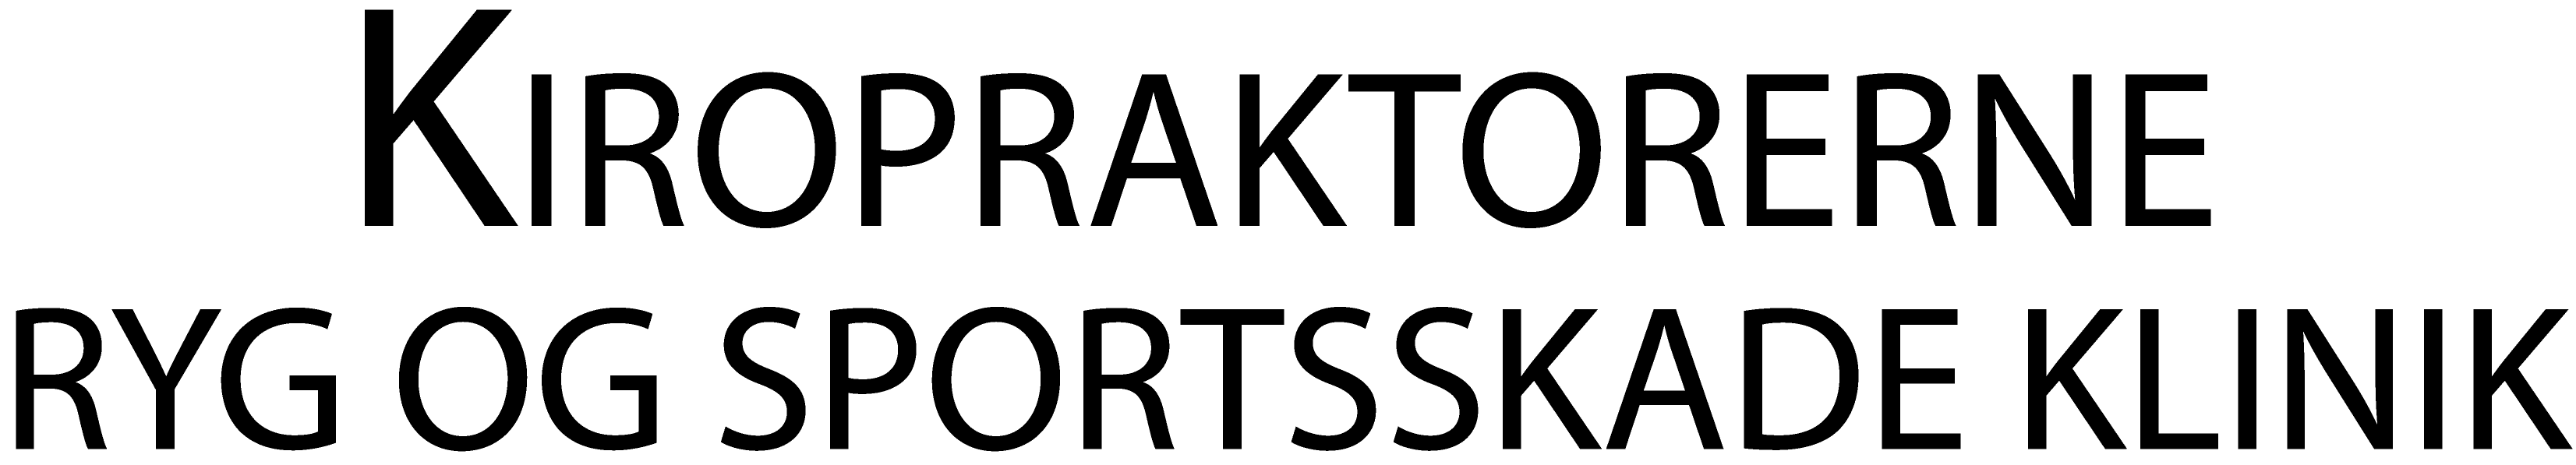 kiropraktorerne logo sort